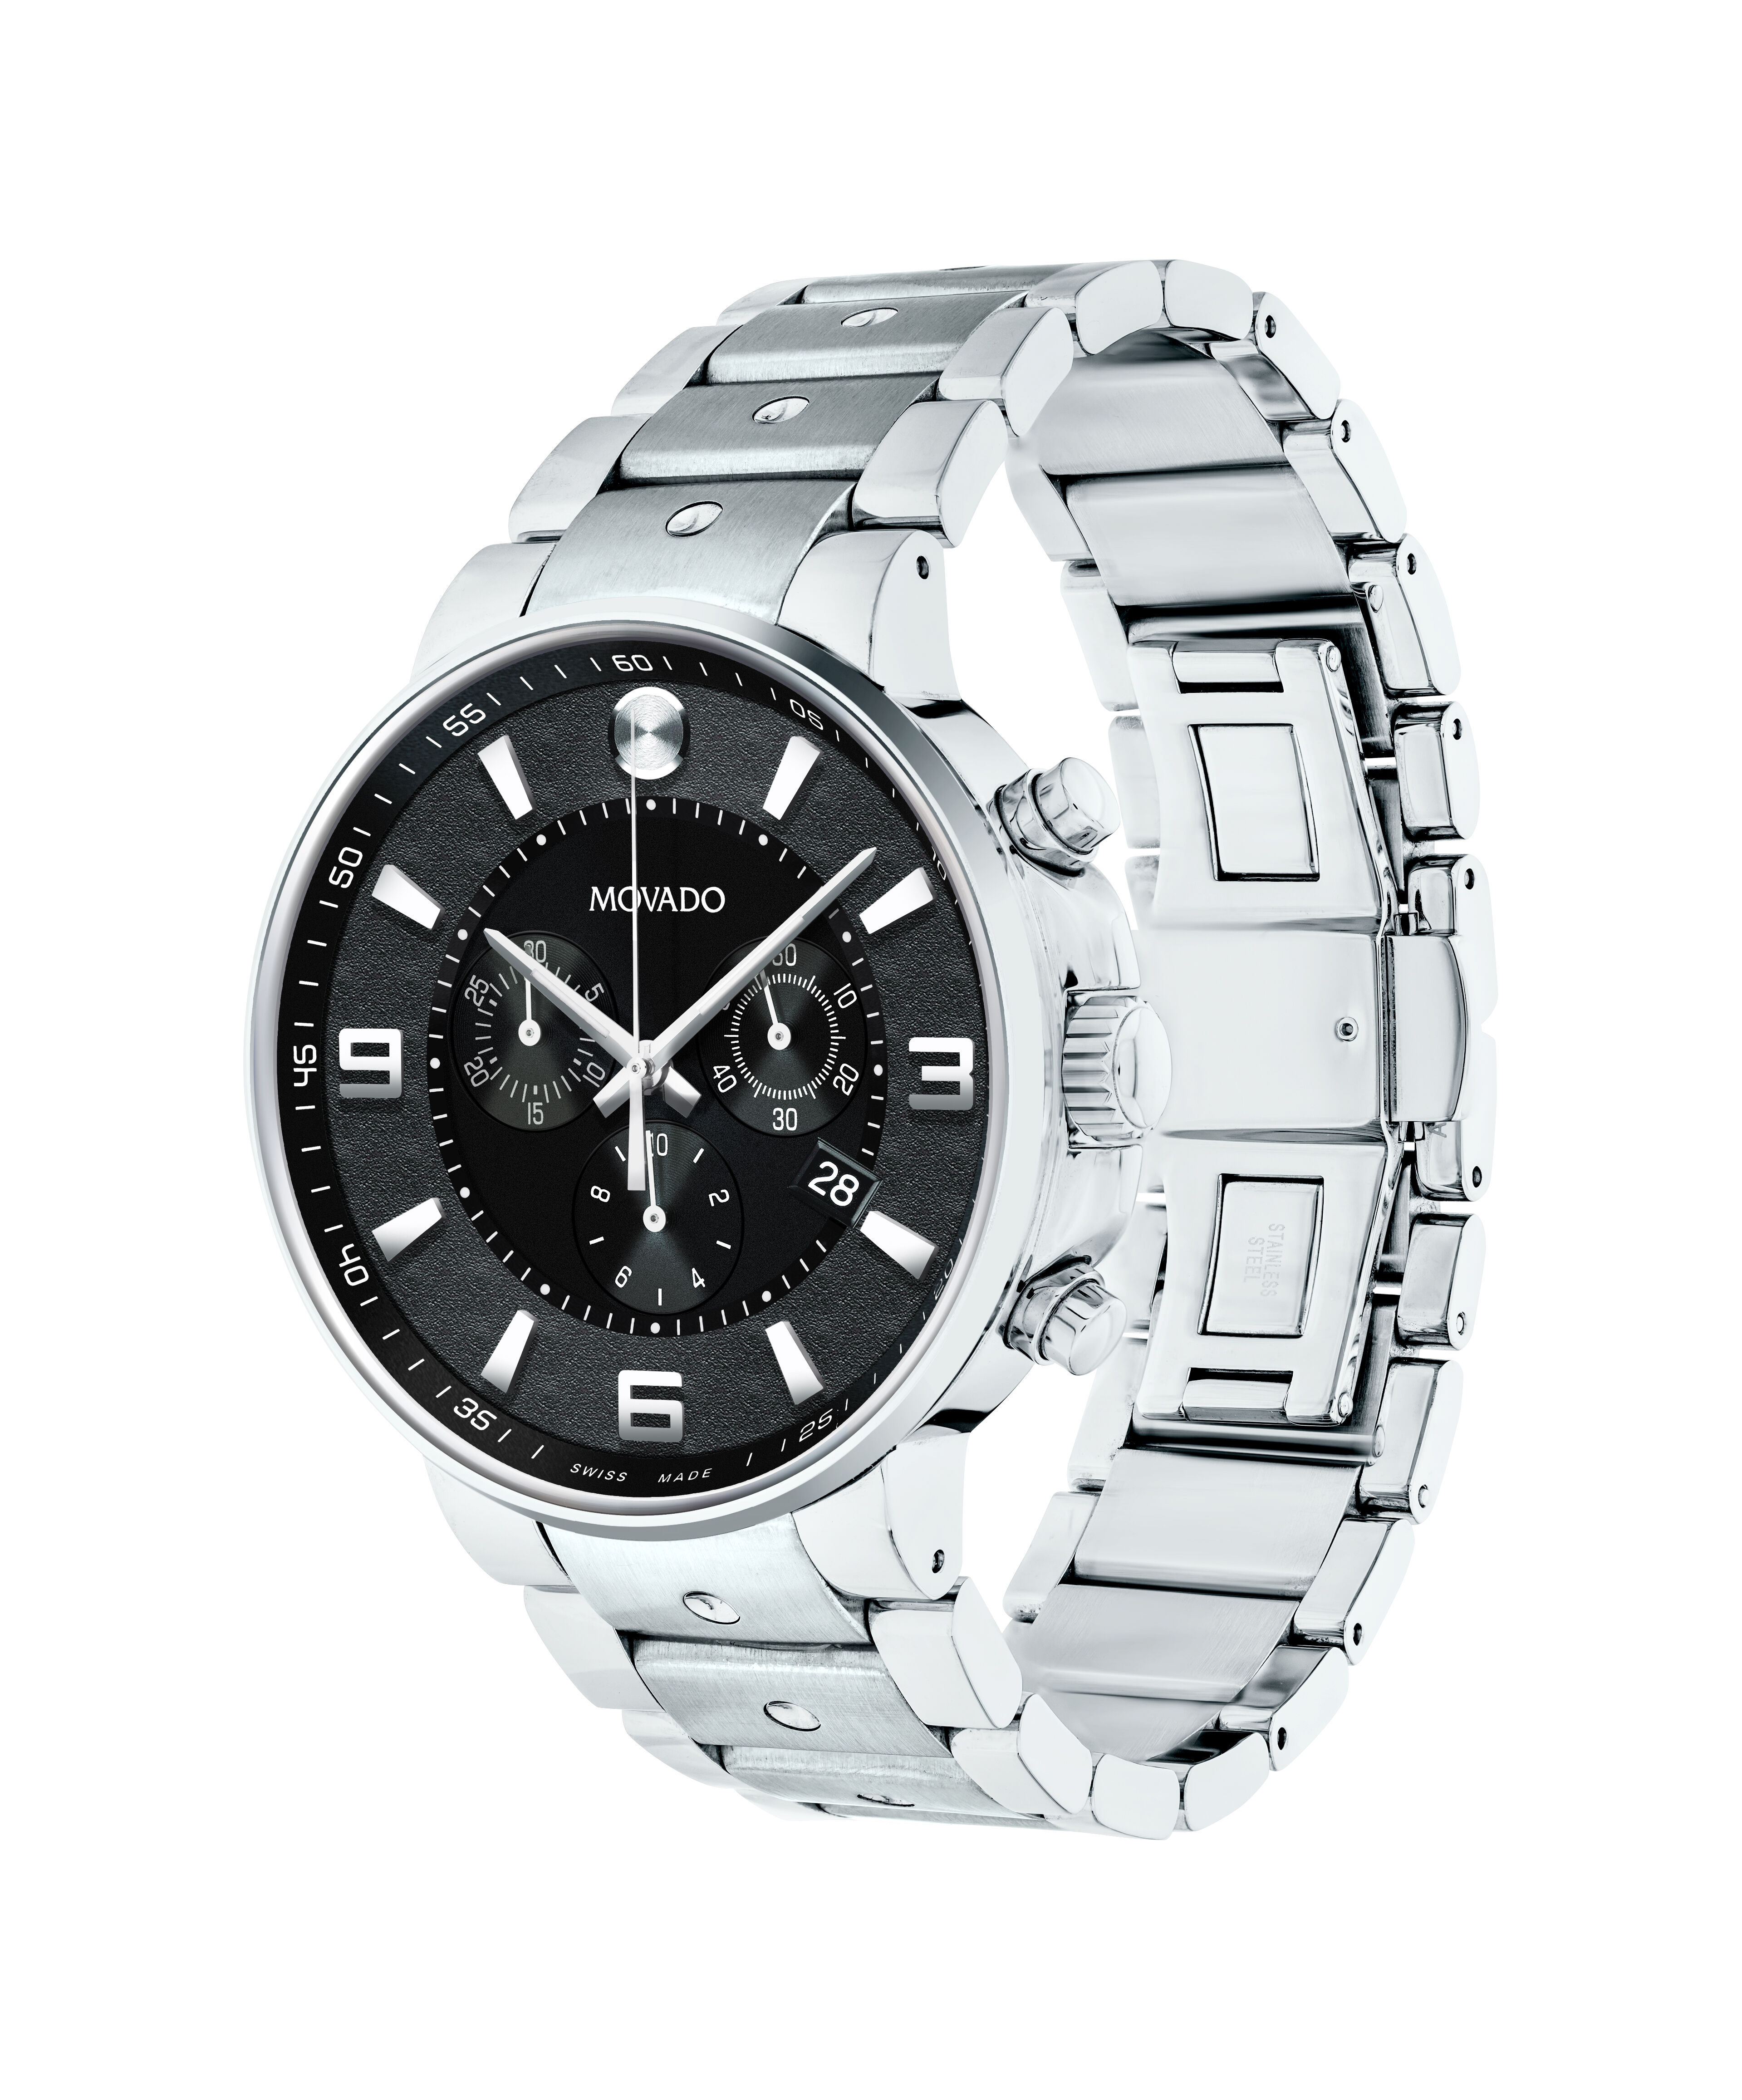 Movado Chronometre ERMETOMovado Chronometre Platinum Pocket Watch w/Diamonds